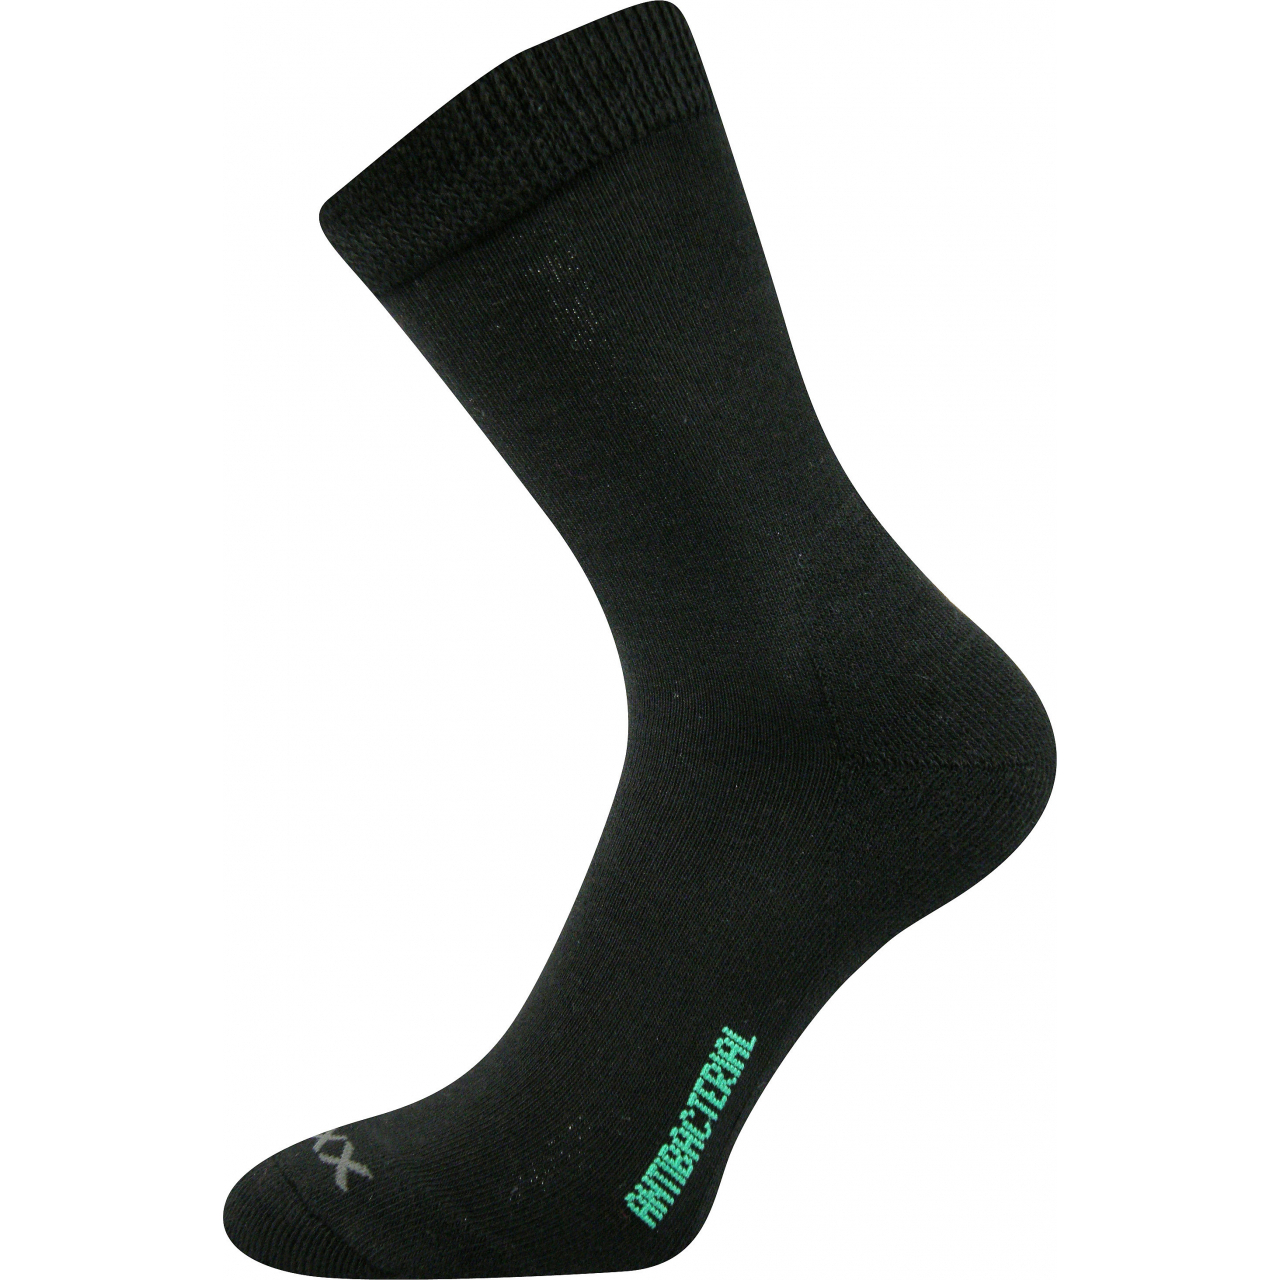 Ponožky zdravotní Voxx Zeus - černé, 43-46